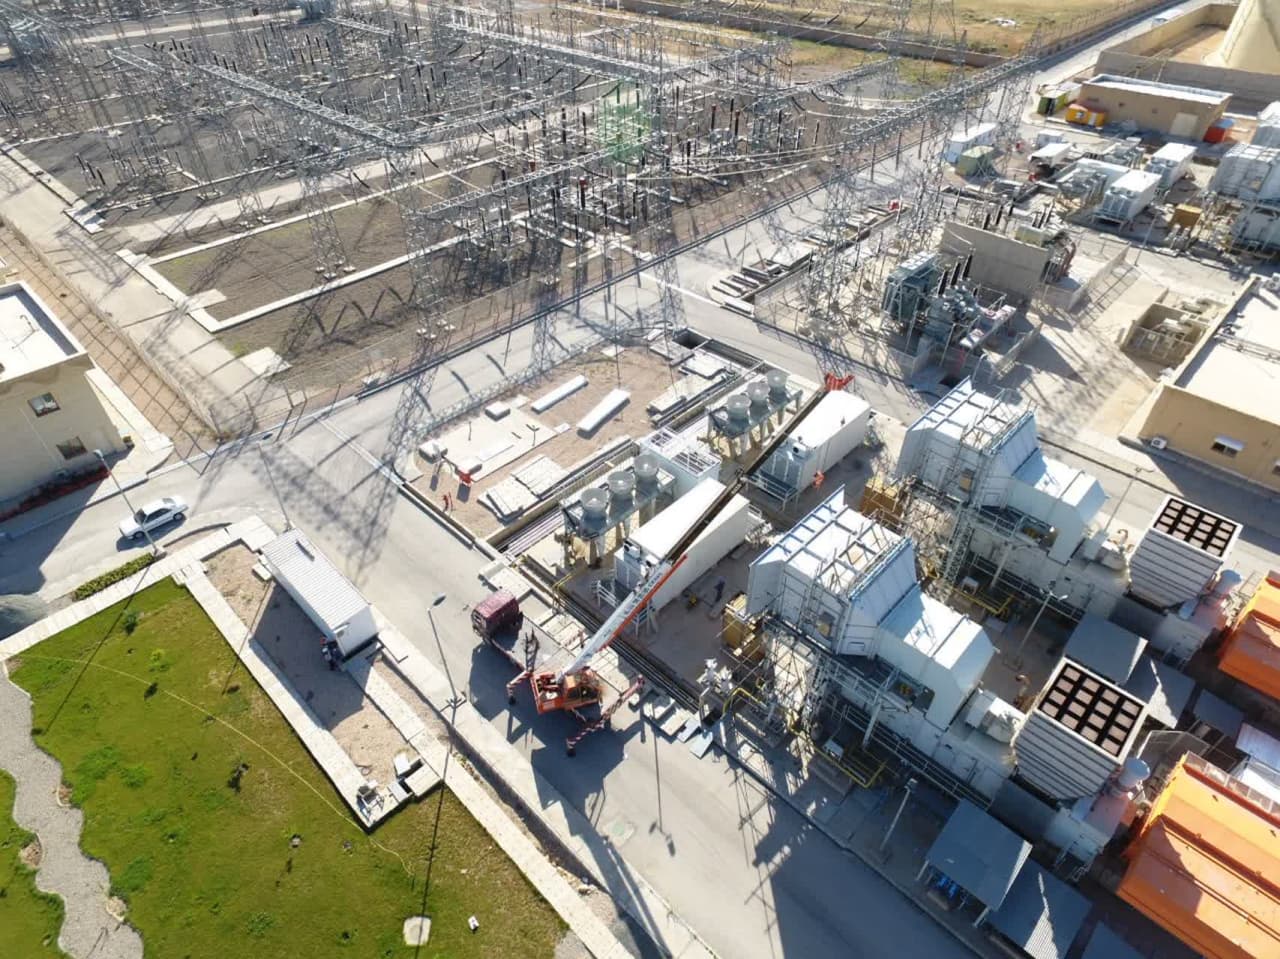 تولید ۴۴۰ میلیون کیلو وات ساعت برق در نیروگاه گازی اسلام آبادغرب